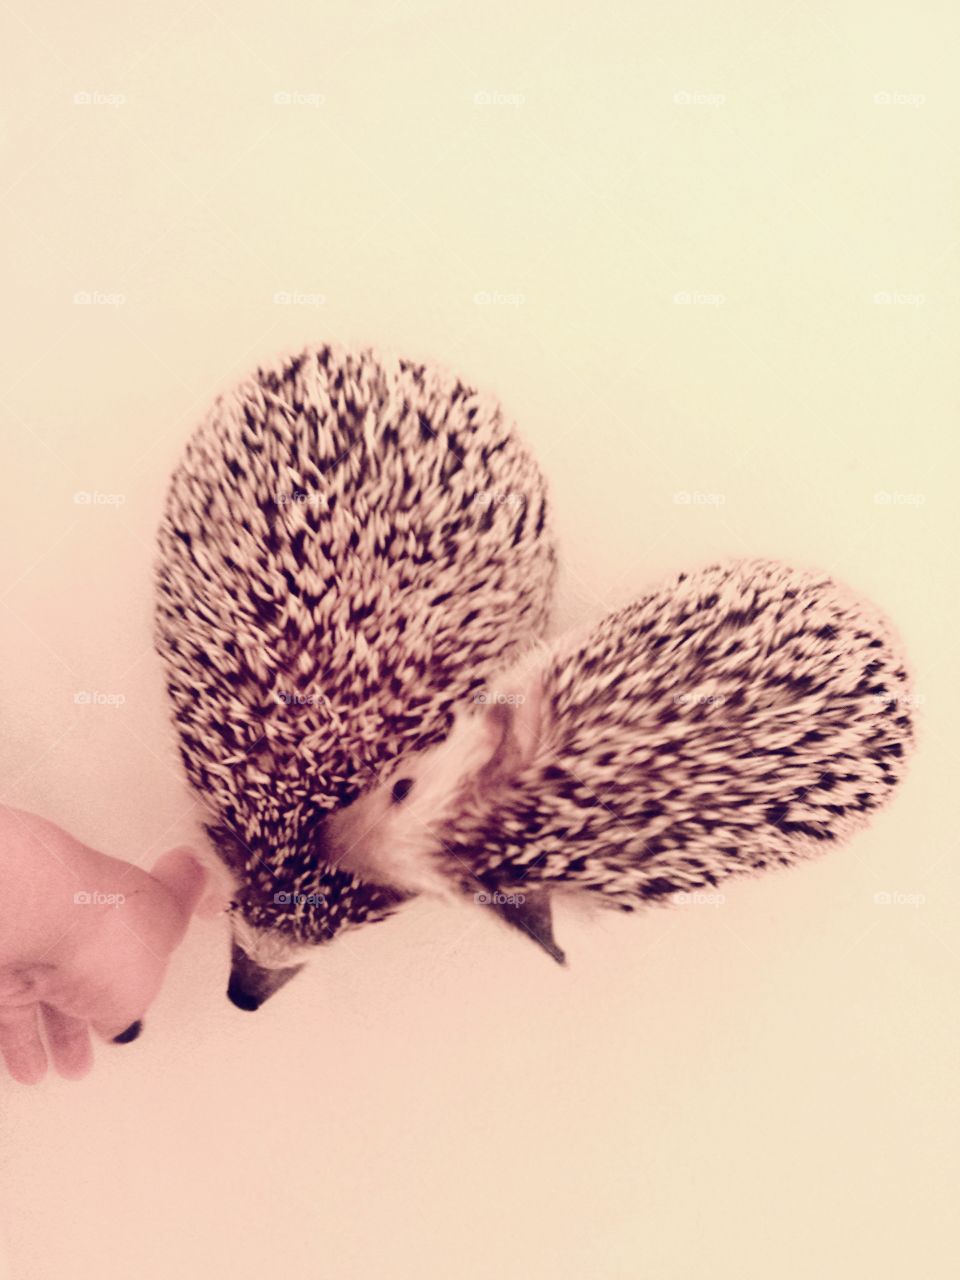 I ♡ hedgehogs